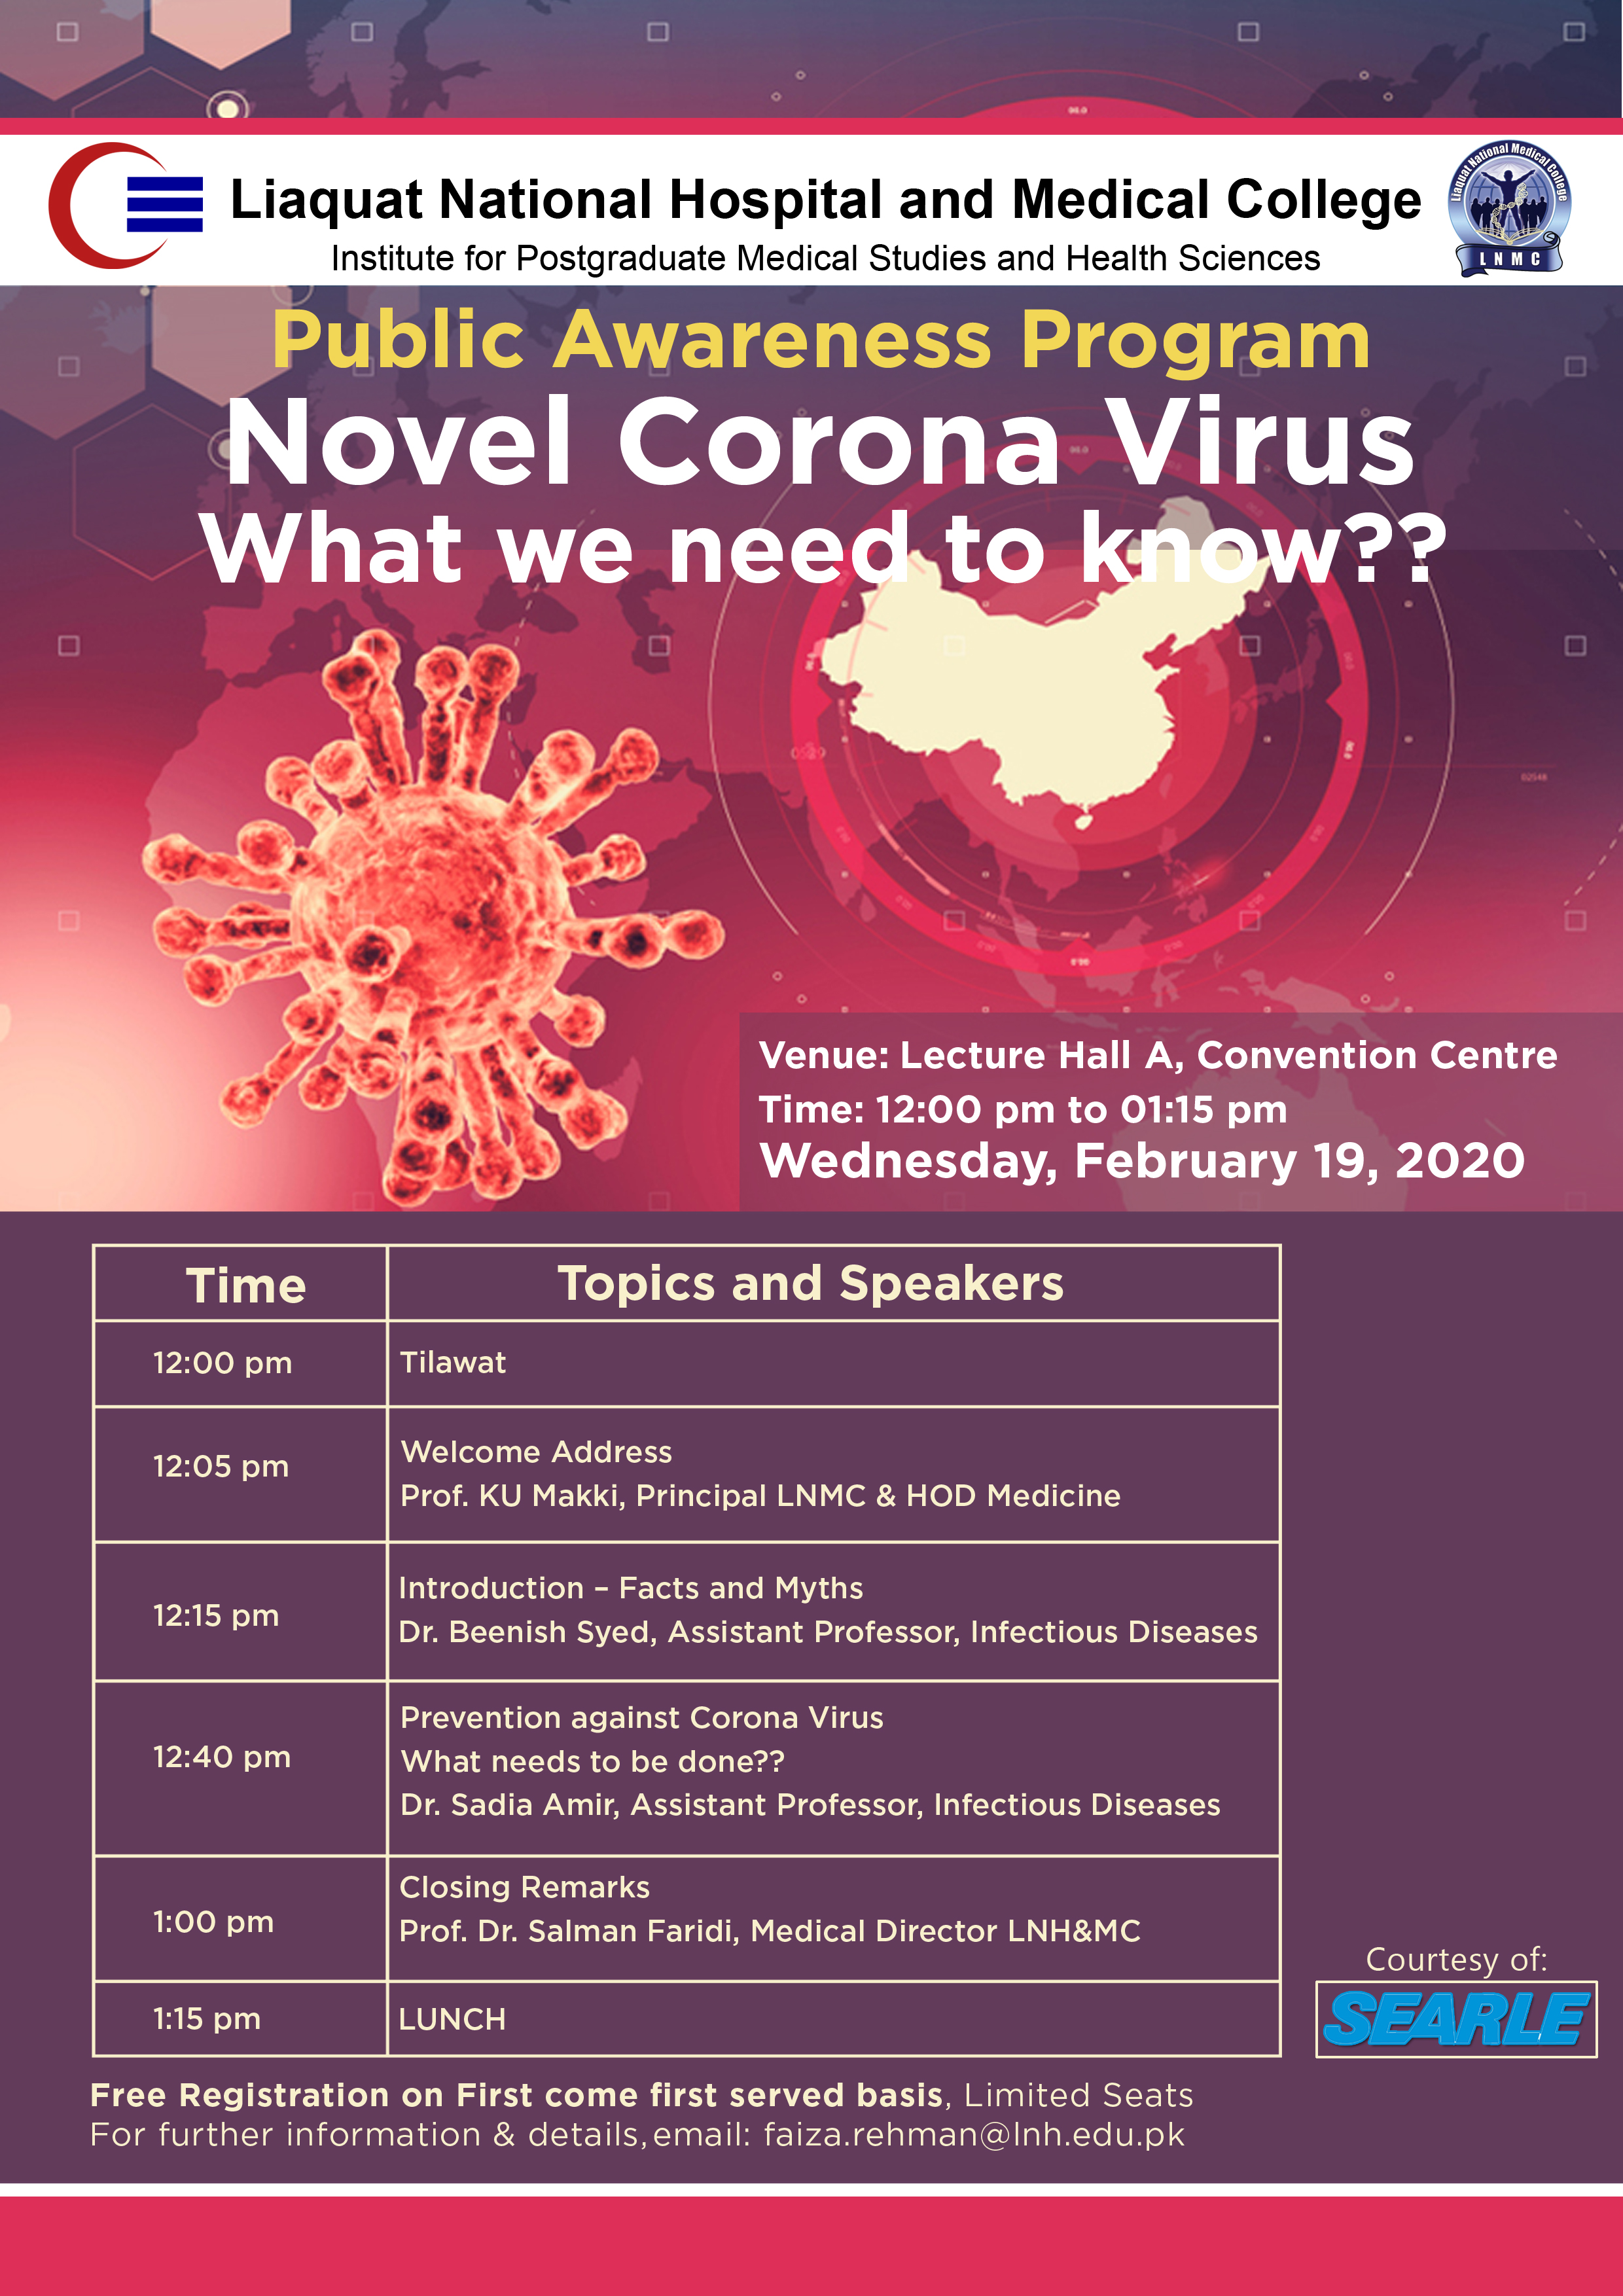 Public Awareness Program on Novel Corona Virus